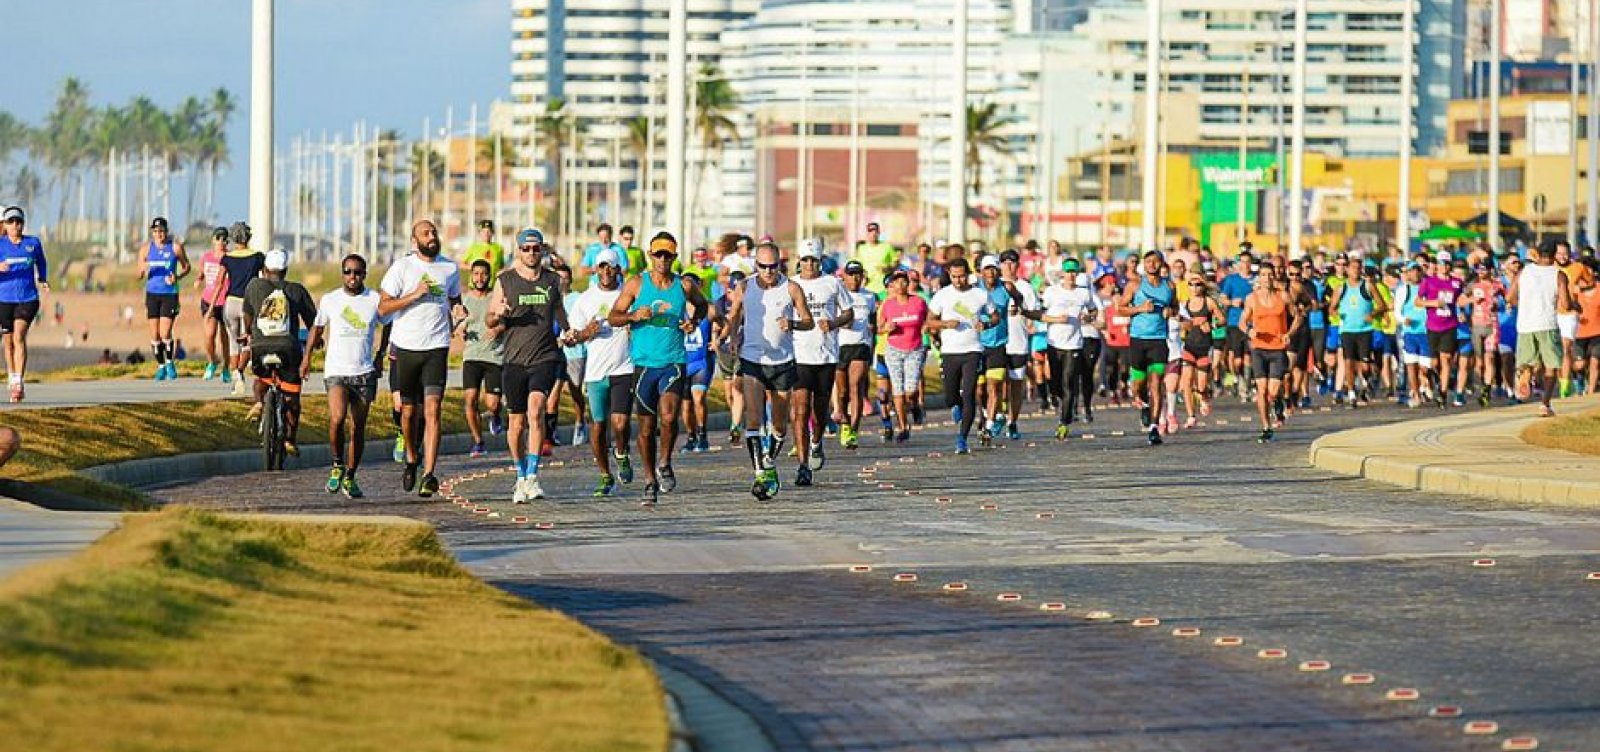 Ultramaratona para celebrar independência da Bahia terá 12h de duração